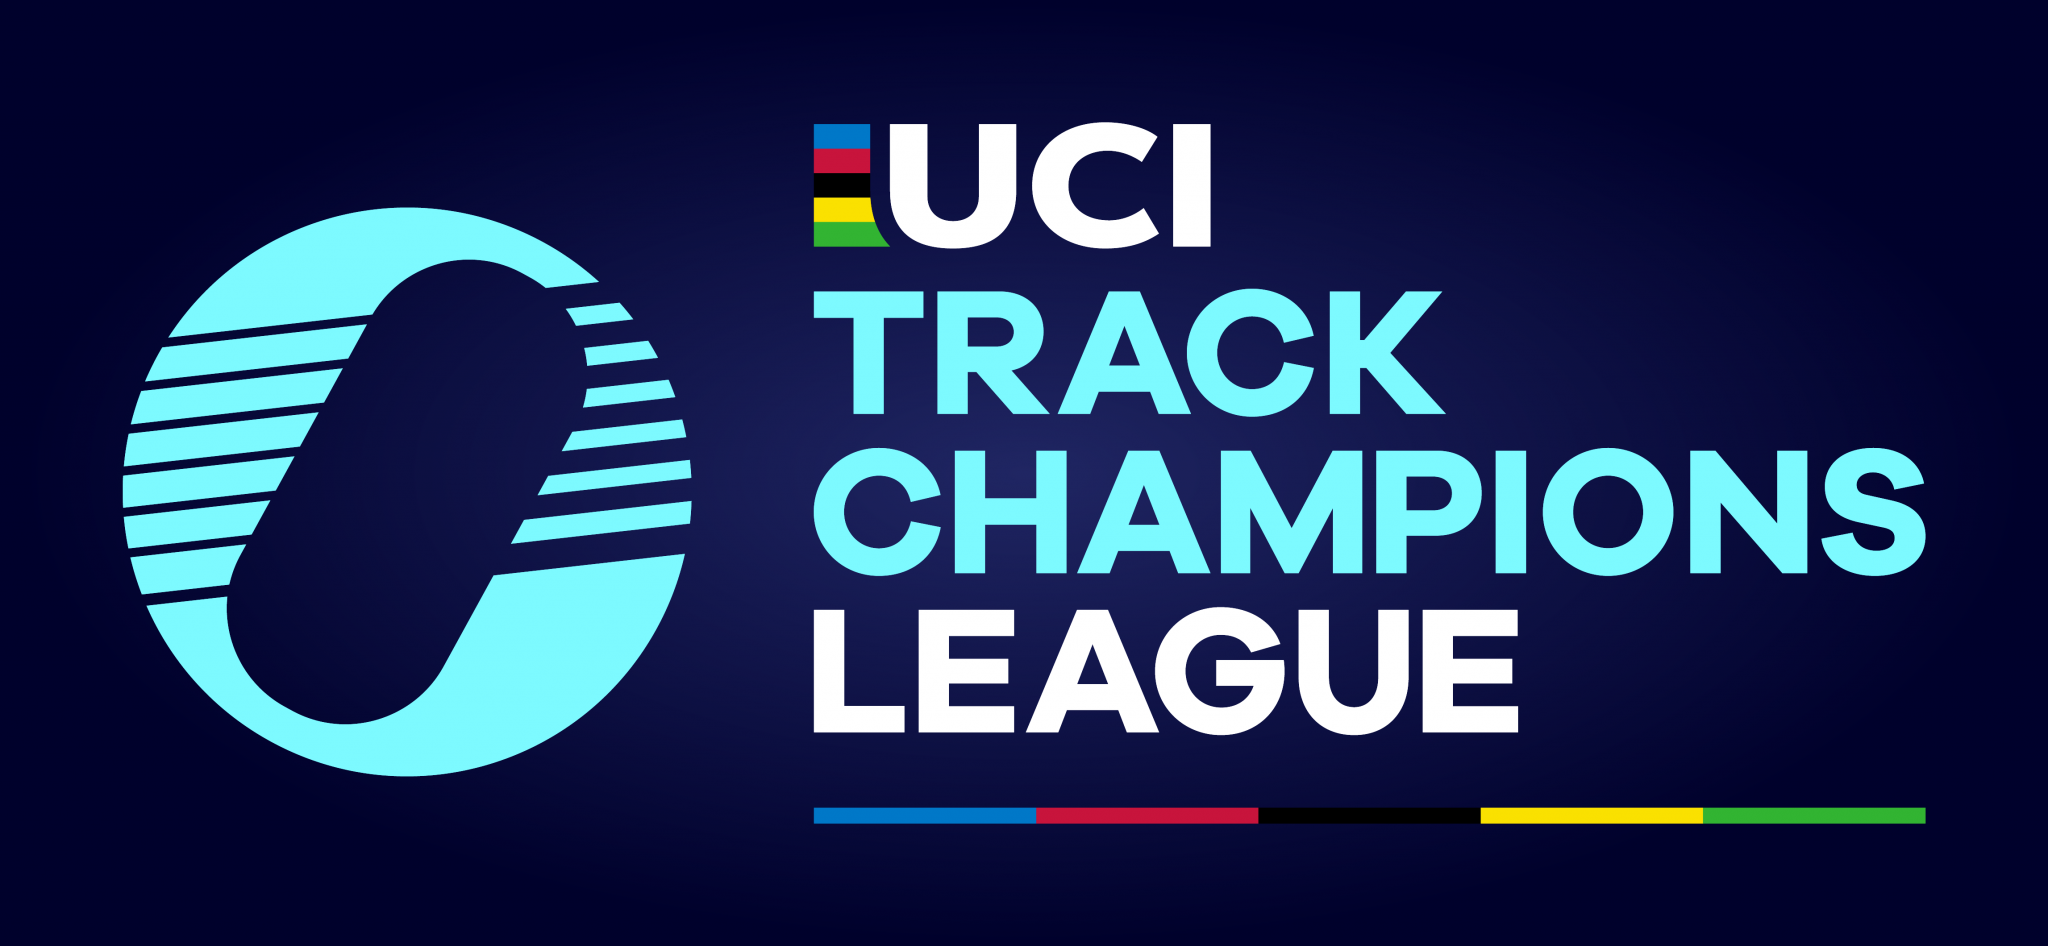 La saison de l'UCI Track Champions League a été dévoilée © UCI